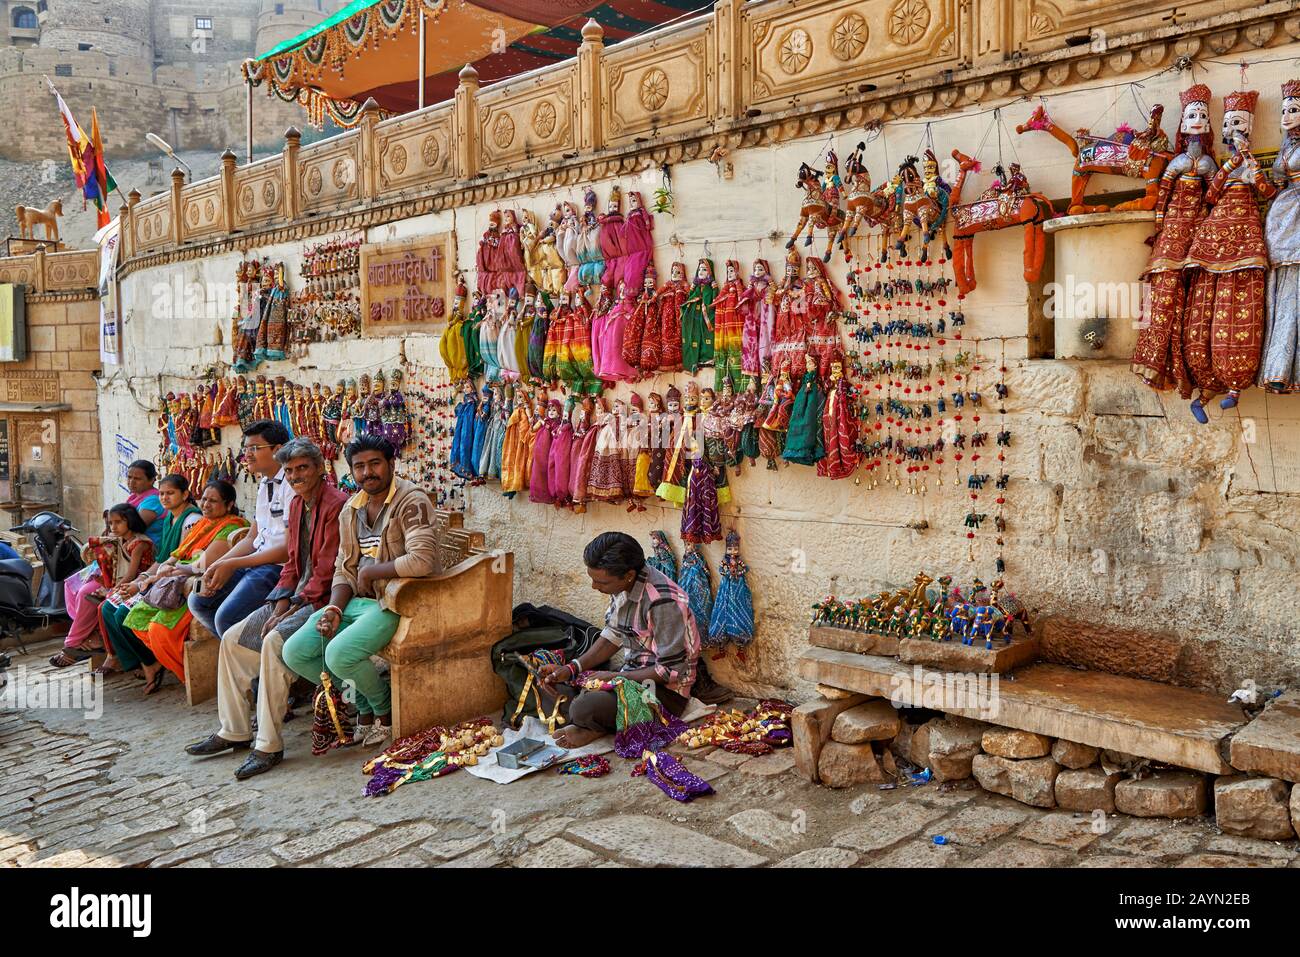 Traditionell gekleidete Frauen verkaufen Souvenirs in den Straßen von Jaisalmer, Rajasthan, Indien Stockfoto